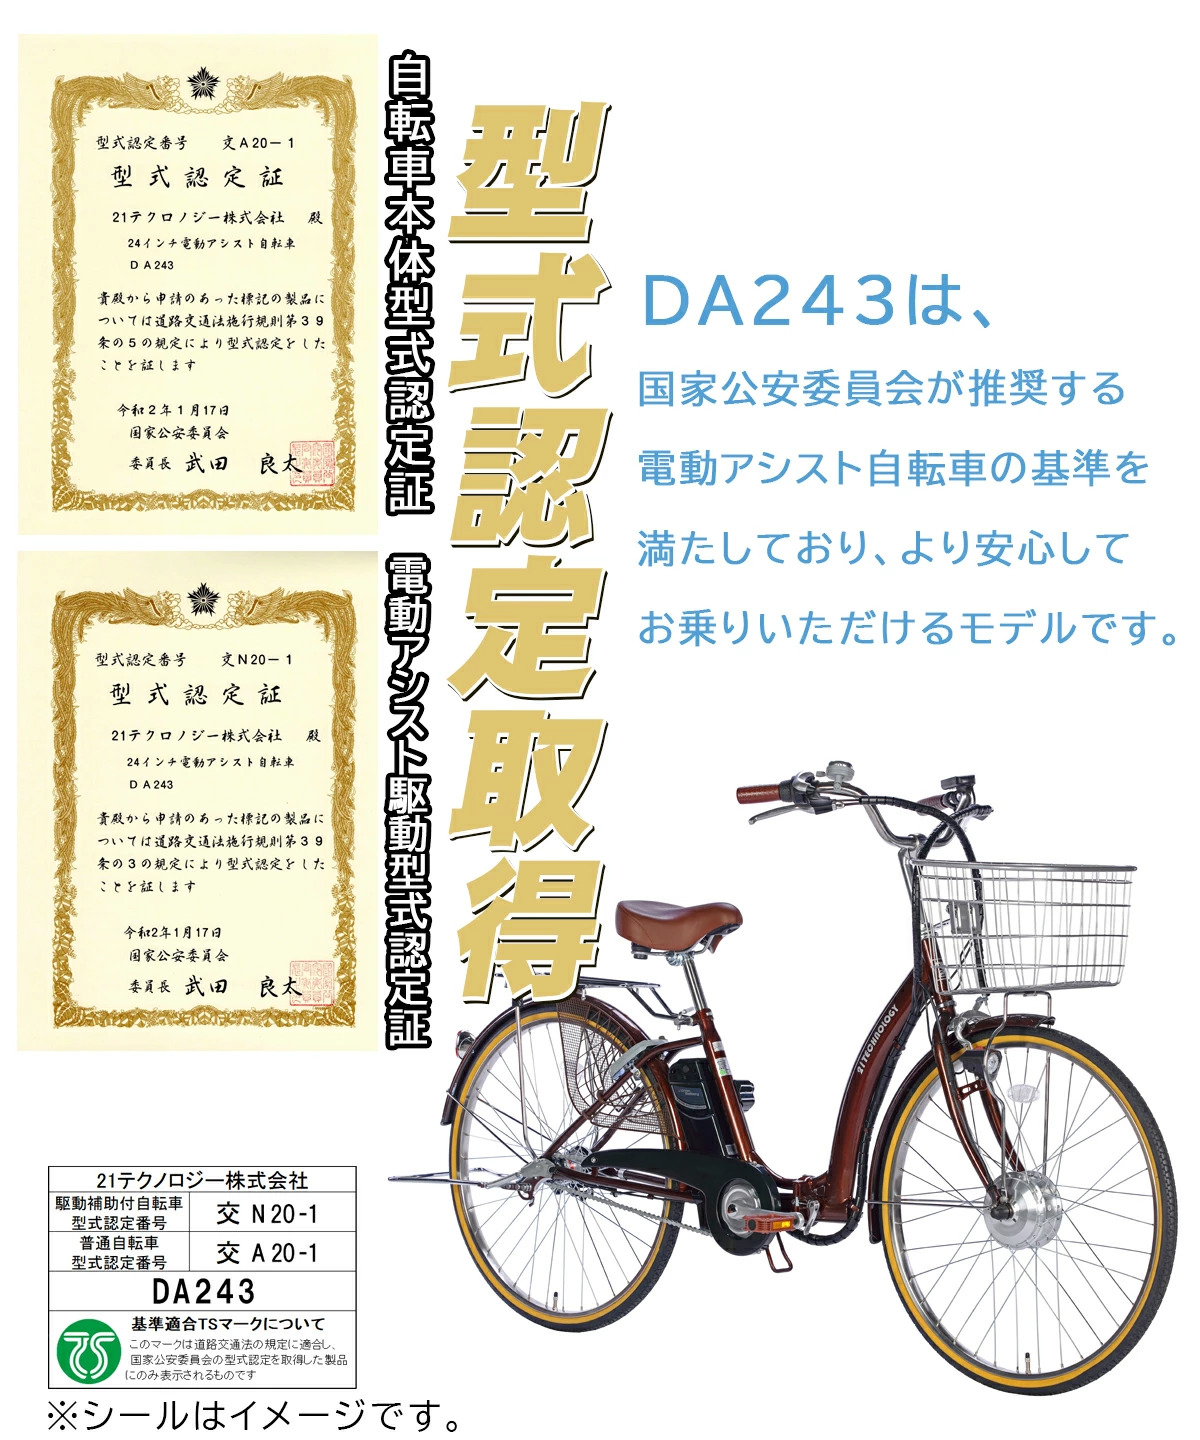 24インチ電動アシスト自転車 DA243 型式認定取得